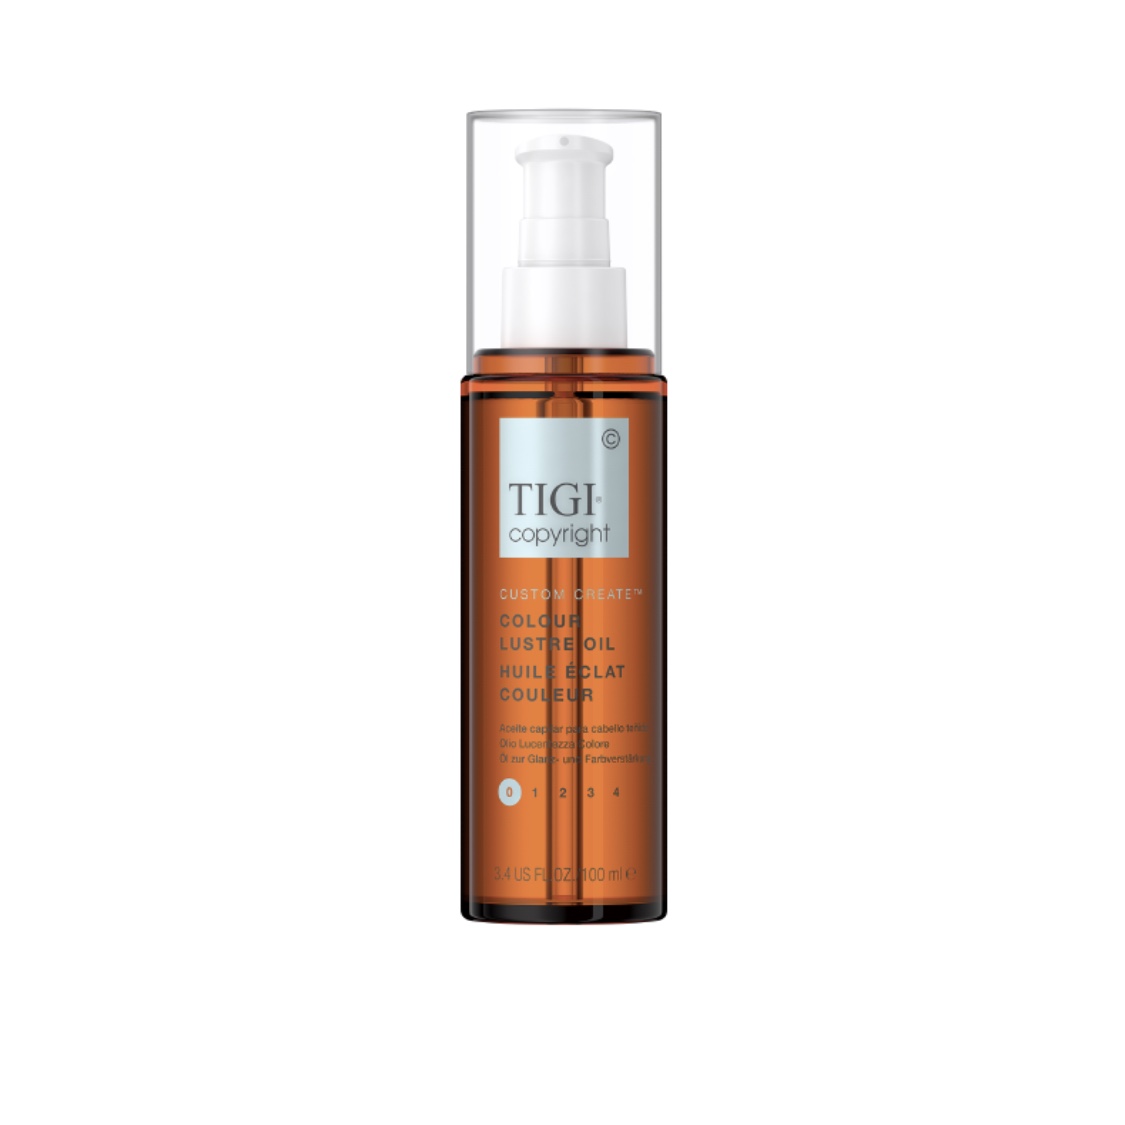 TIGI Copyright Custom Care Colour Lustre Oil - Масло для защиты цвета окрашенных волос 100 мл, TIGI (Великобритания)  - Купить